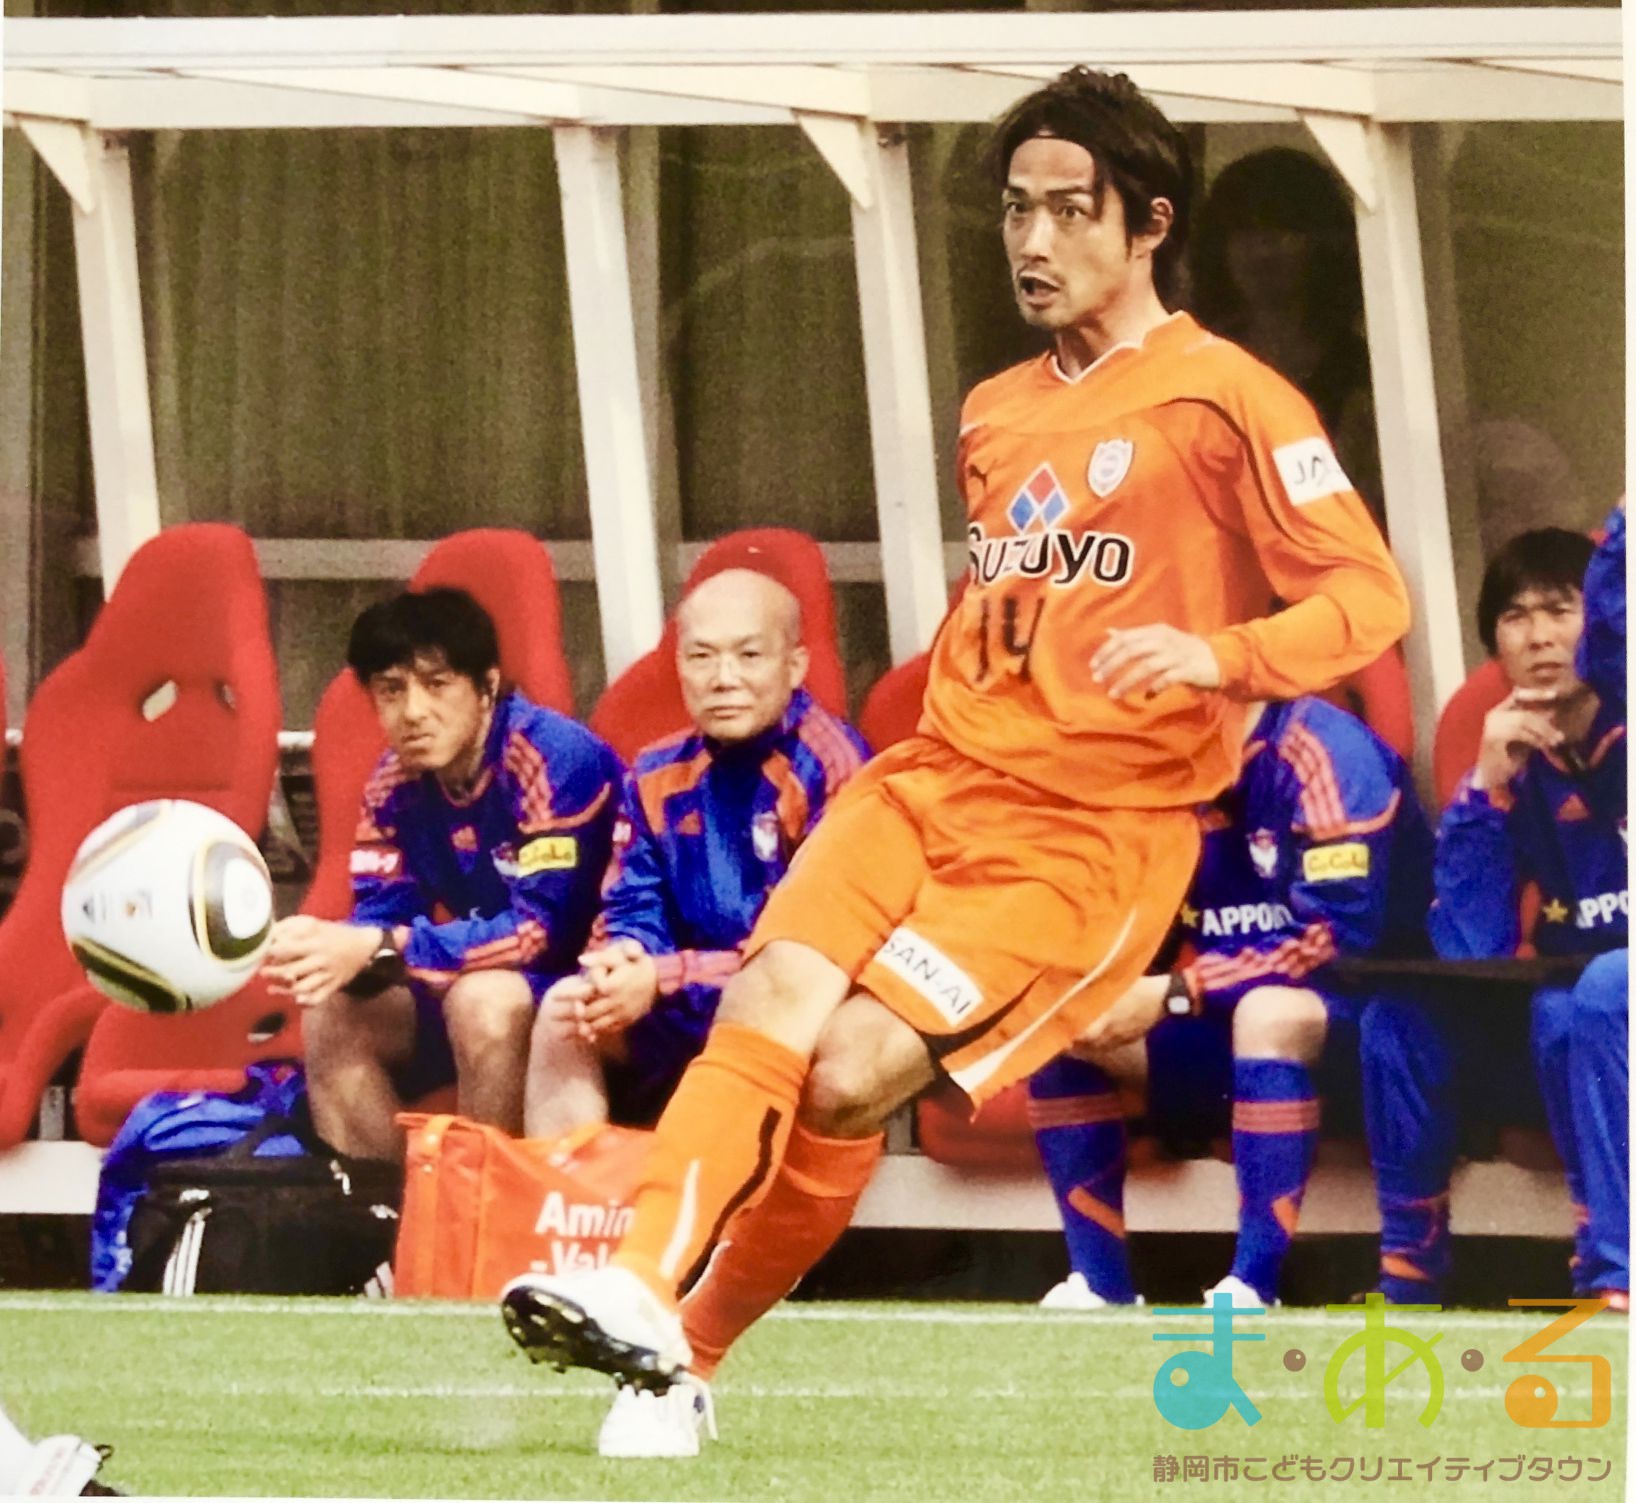 8周年とくべつこうざ 清水エスパルスob選手に学ぶ プロサッカー選手のおしごと とは 静岡市こどもクリエイティブタウンま あ る 公式ホームページ